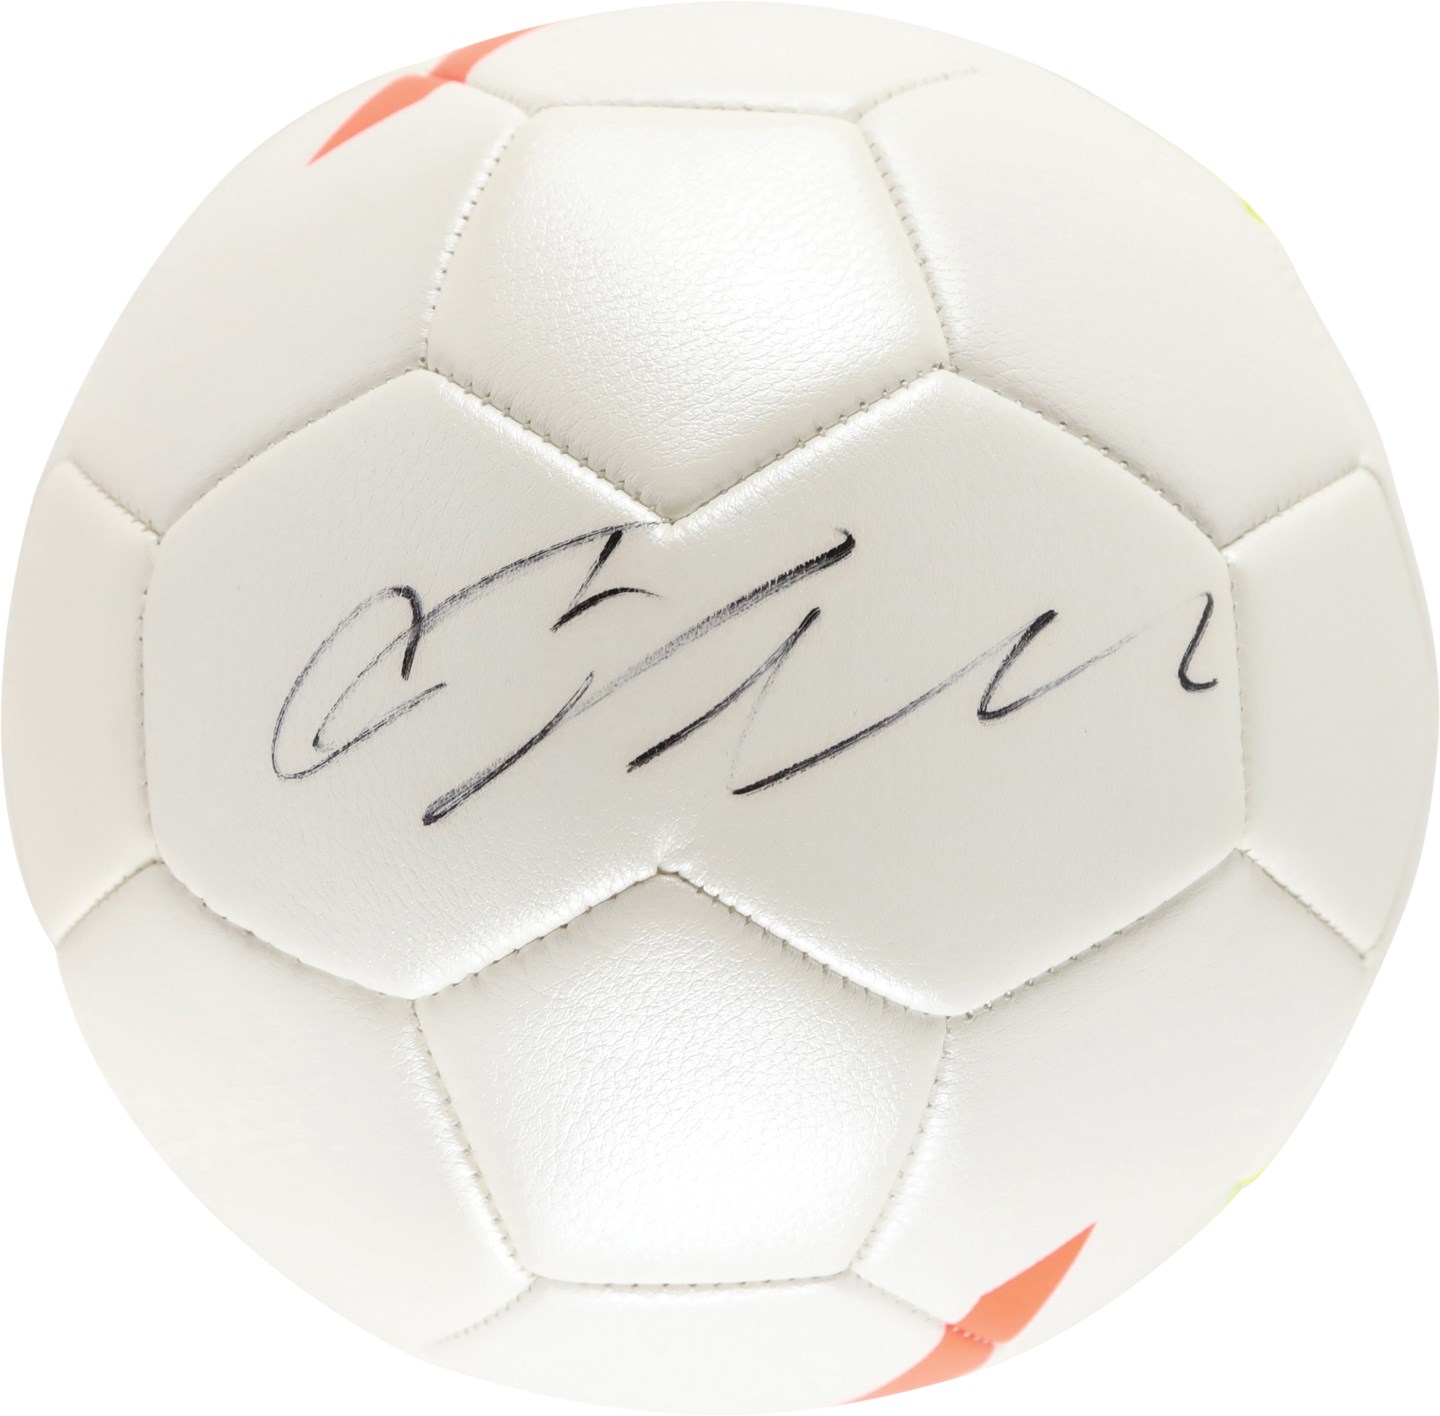 Olympics and All Sports - Cristiano Ronaldo Signed Soccer Ball (PSA)